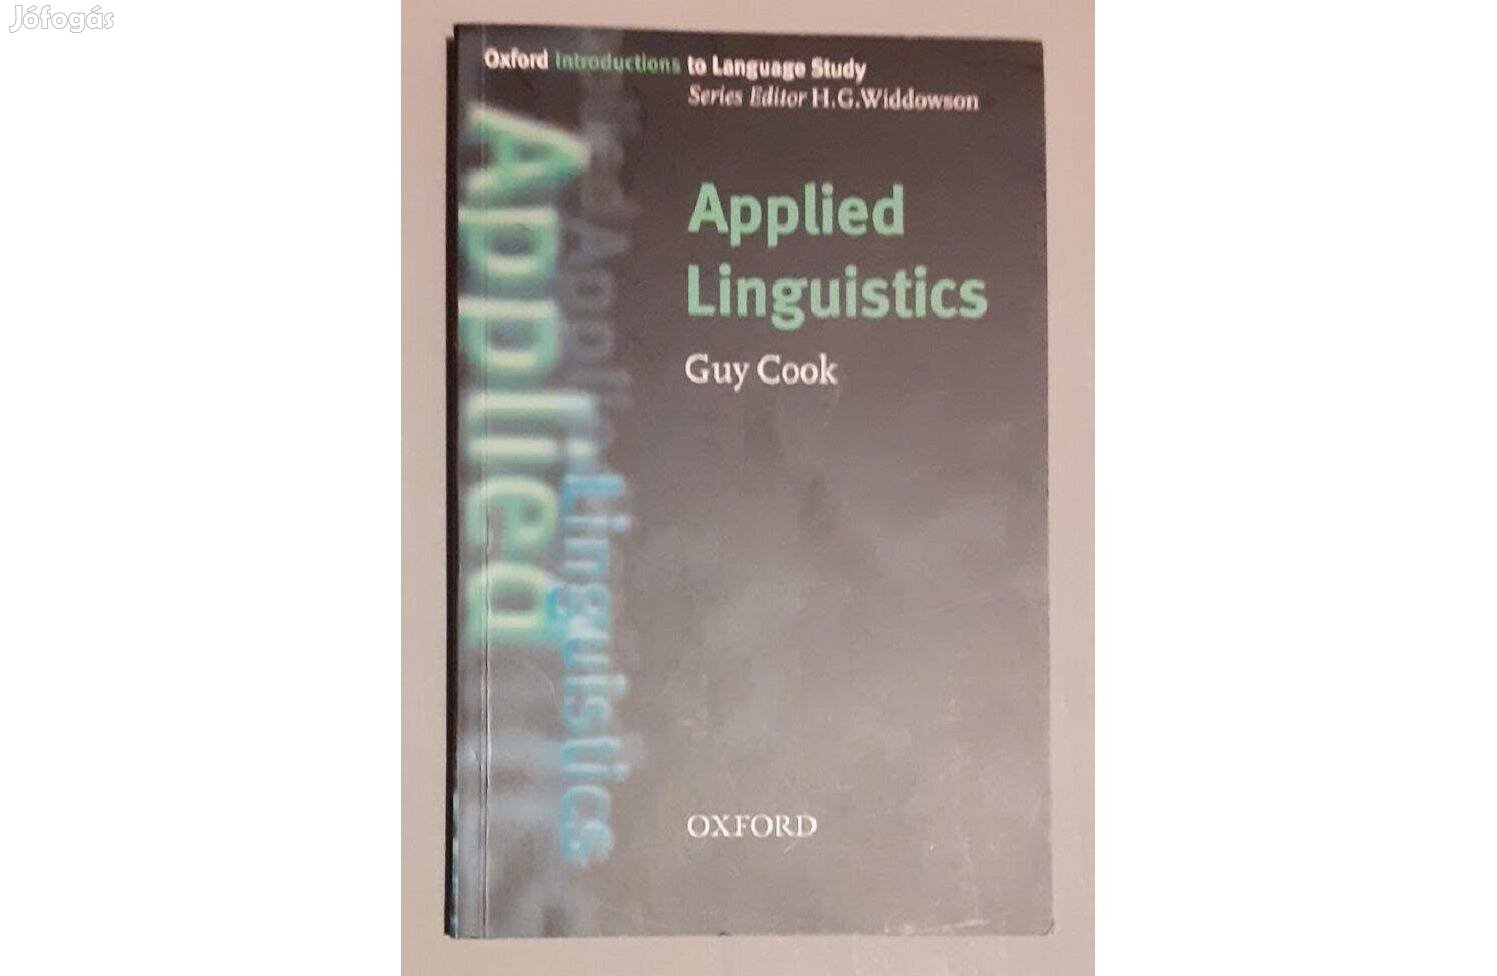 Guy Cook: Applied Linguistics Oxford University Press angol szakkönyv